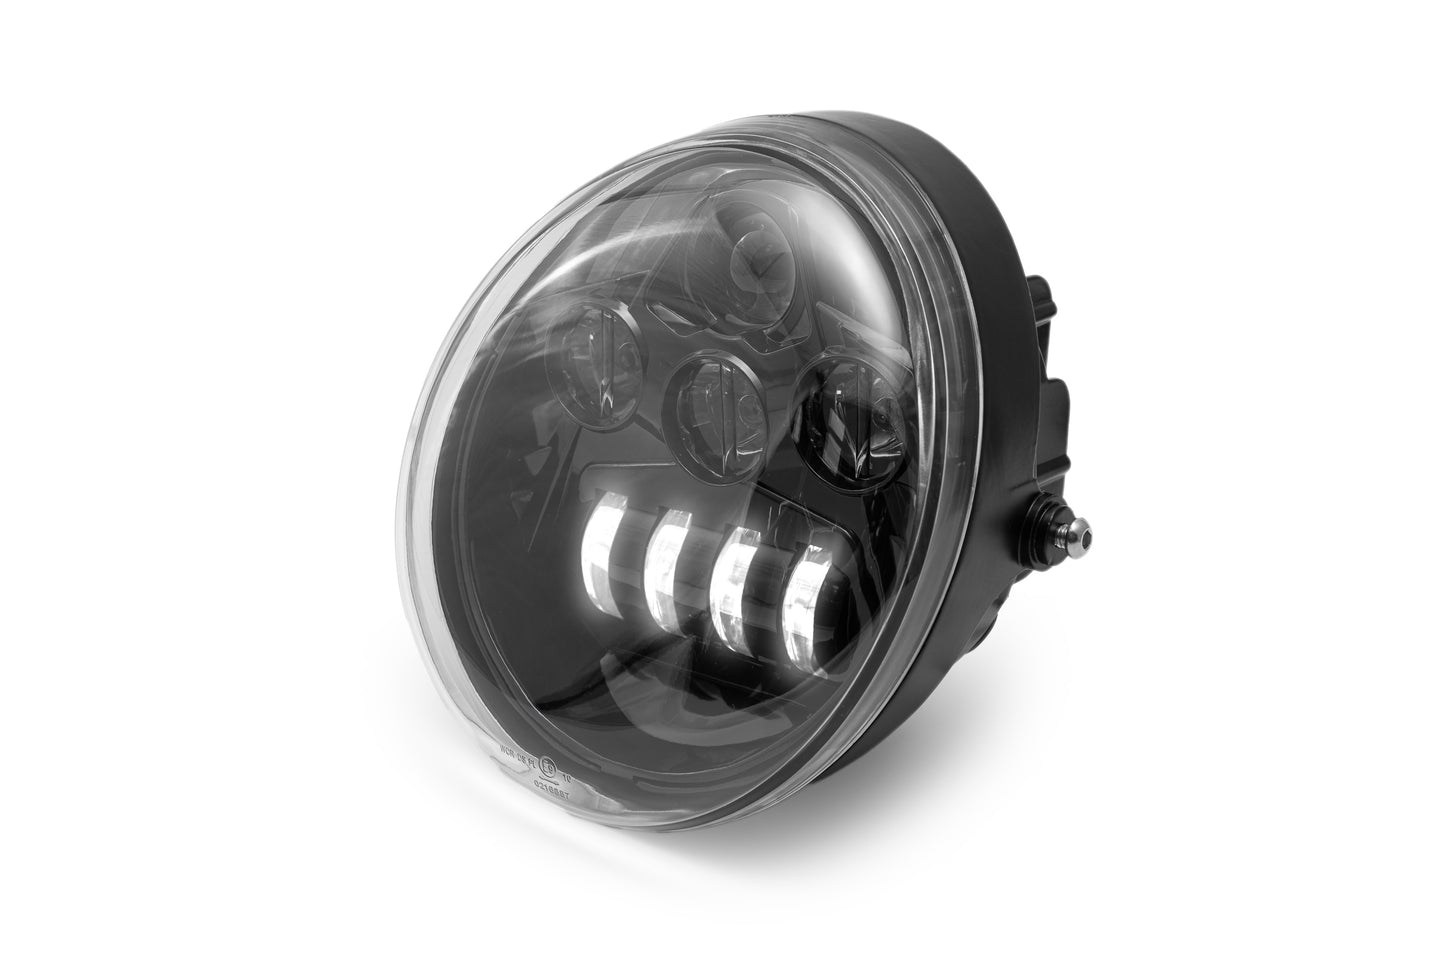 Harley Davidson black LED headlight kit by Killer Custom white background